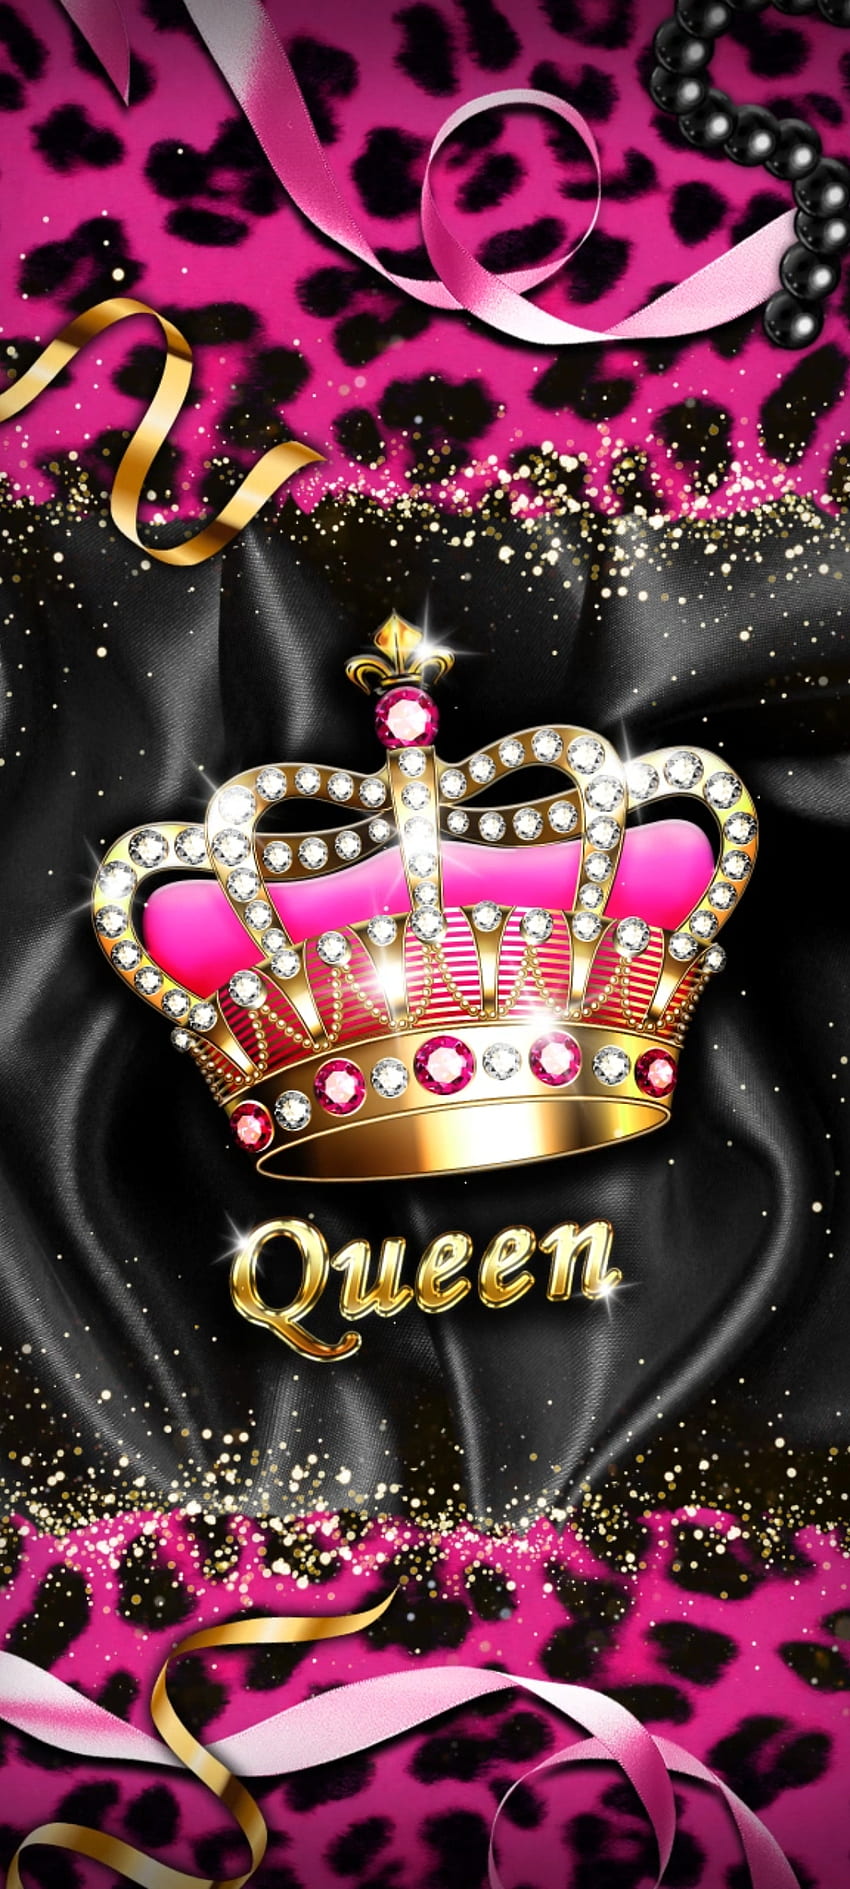 Nữ hoàng đồng xu hồng: Với chất liệu đồng xu hồng cùng hình ảnh nữ hoàng quyền lực, kết hợp với nhau sẽ tạo nên một kiệt tác vàng ngọc, đầy thu hút và sức lôi cuốn. Hãy chiêm ngưỡng hình ảnh nữ hoàng đồng xu hồng và cảm nhận vẻ đẹp tuyệt vời của nó.